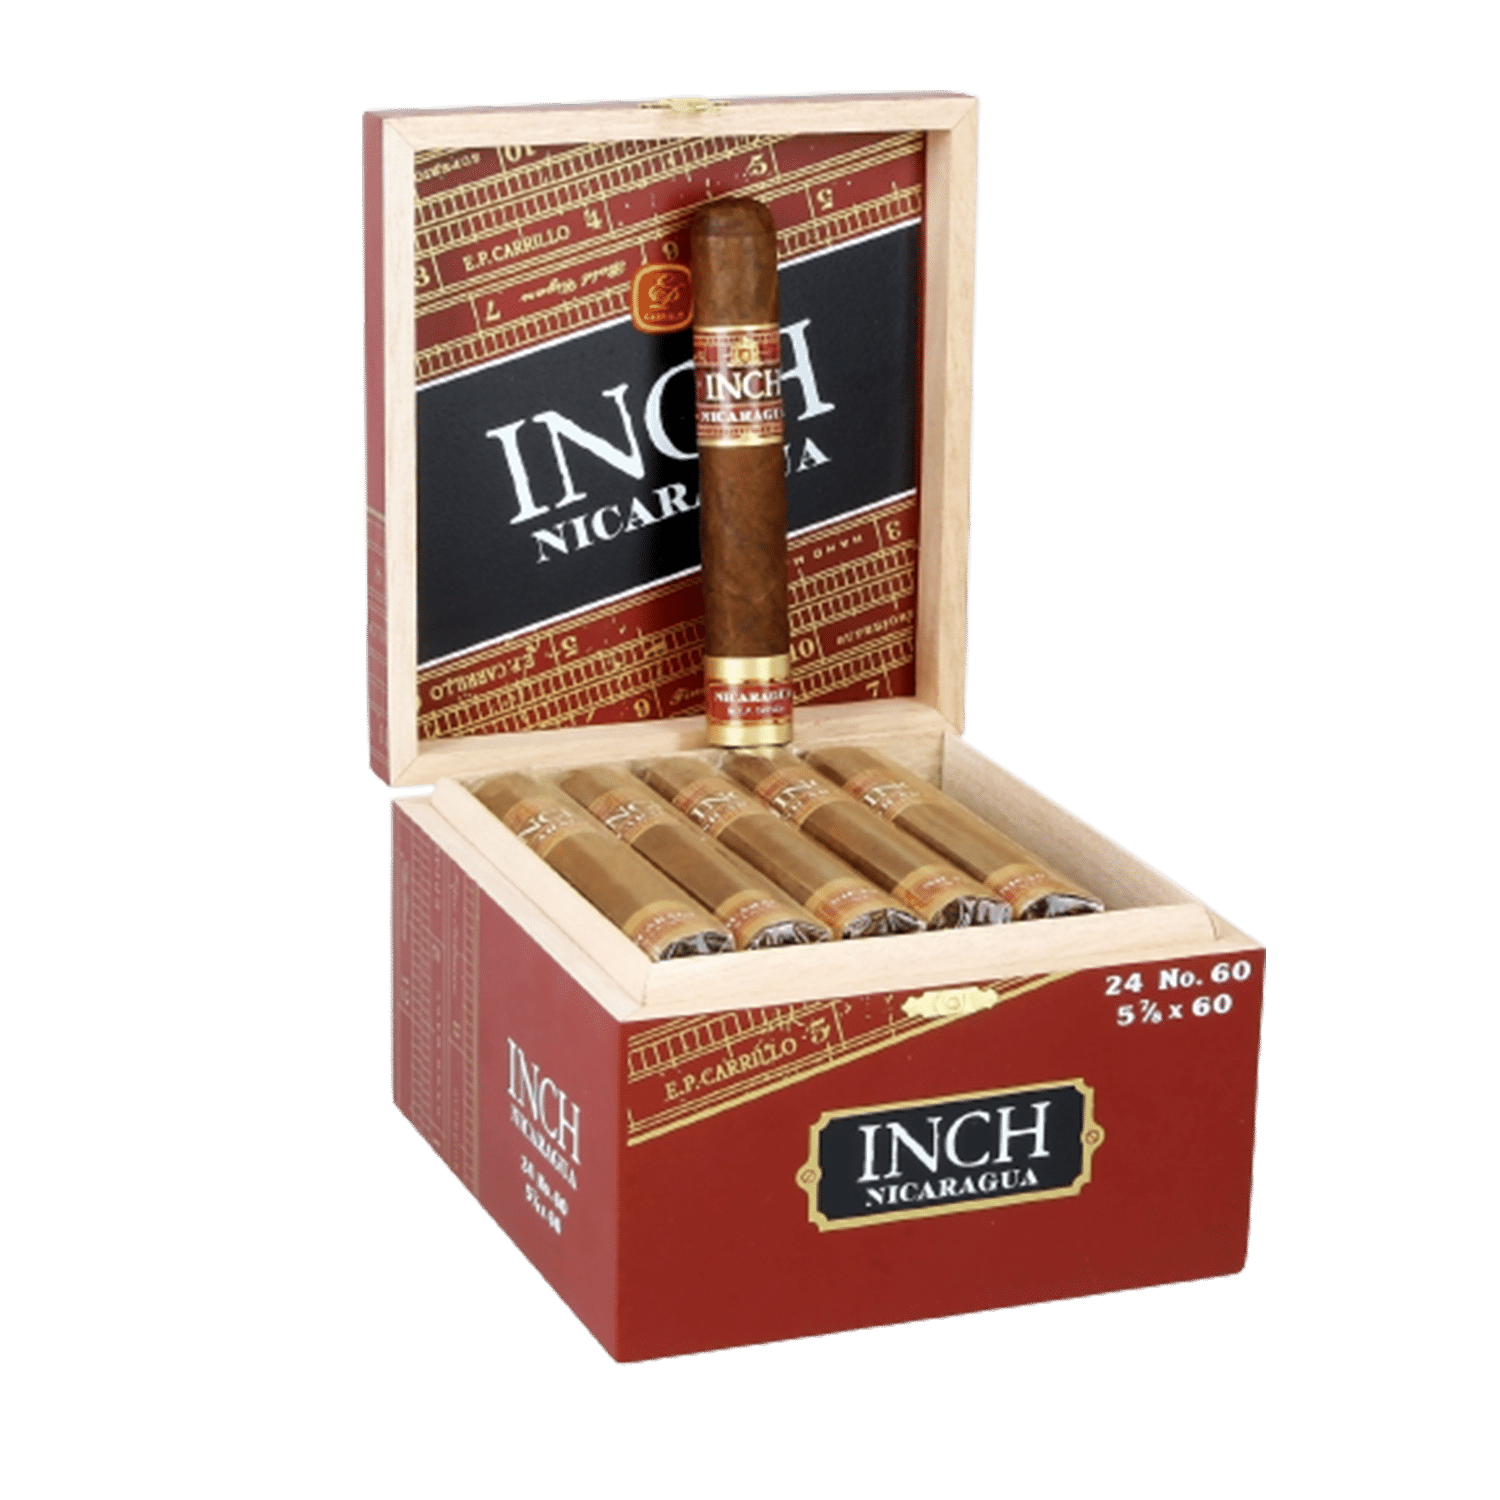 INCH Nicaragua No.60 24 Cigars